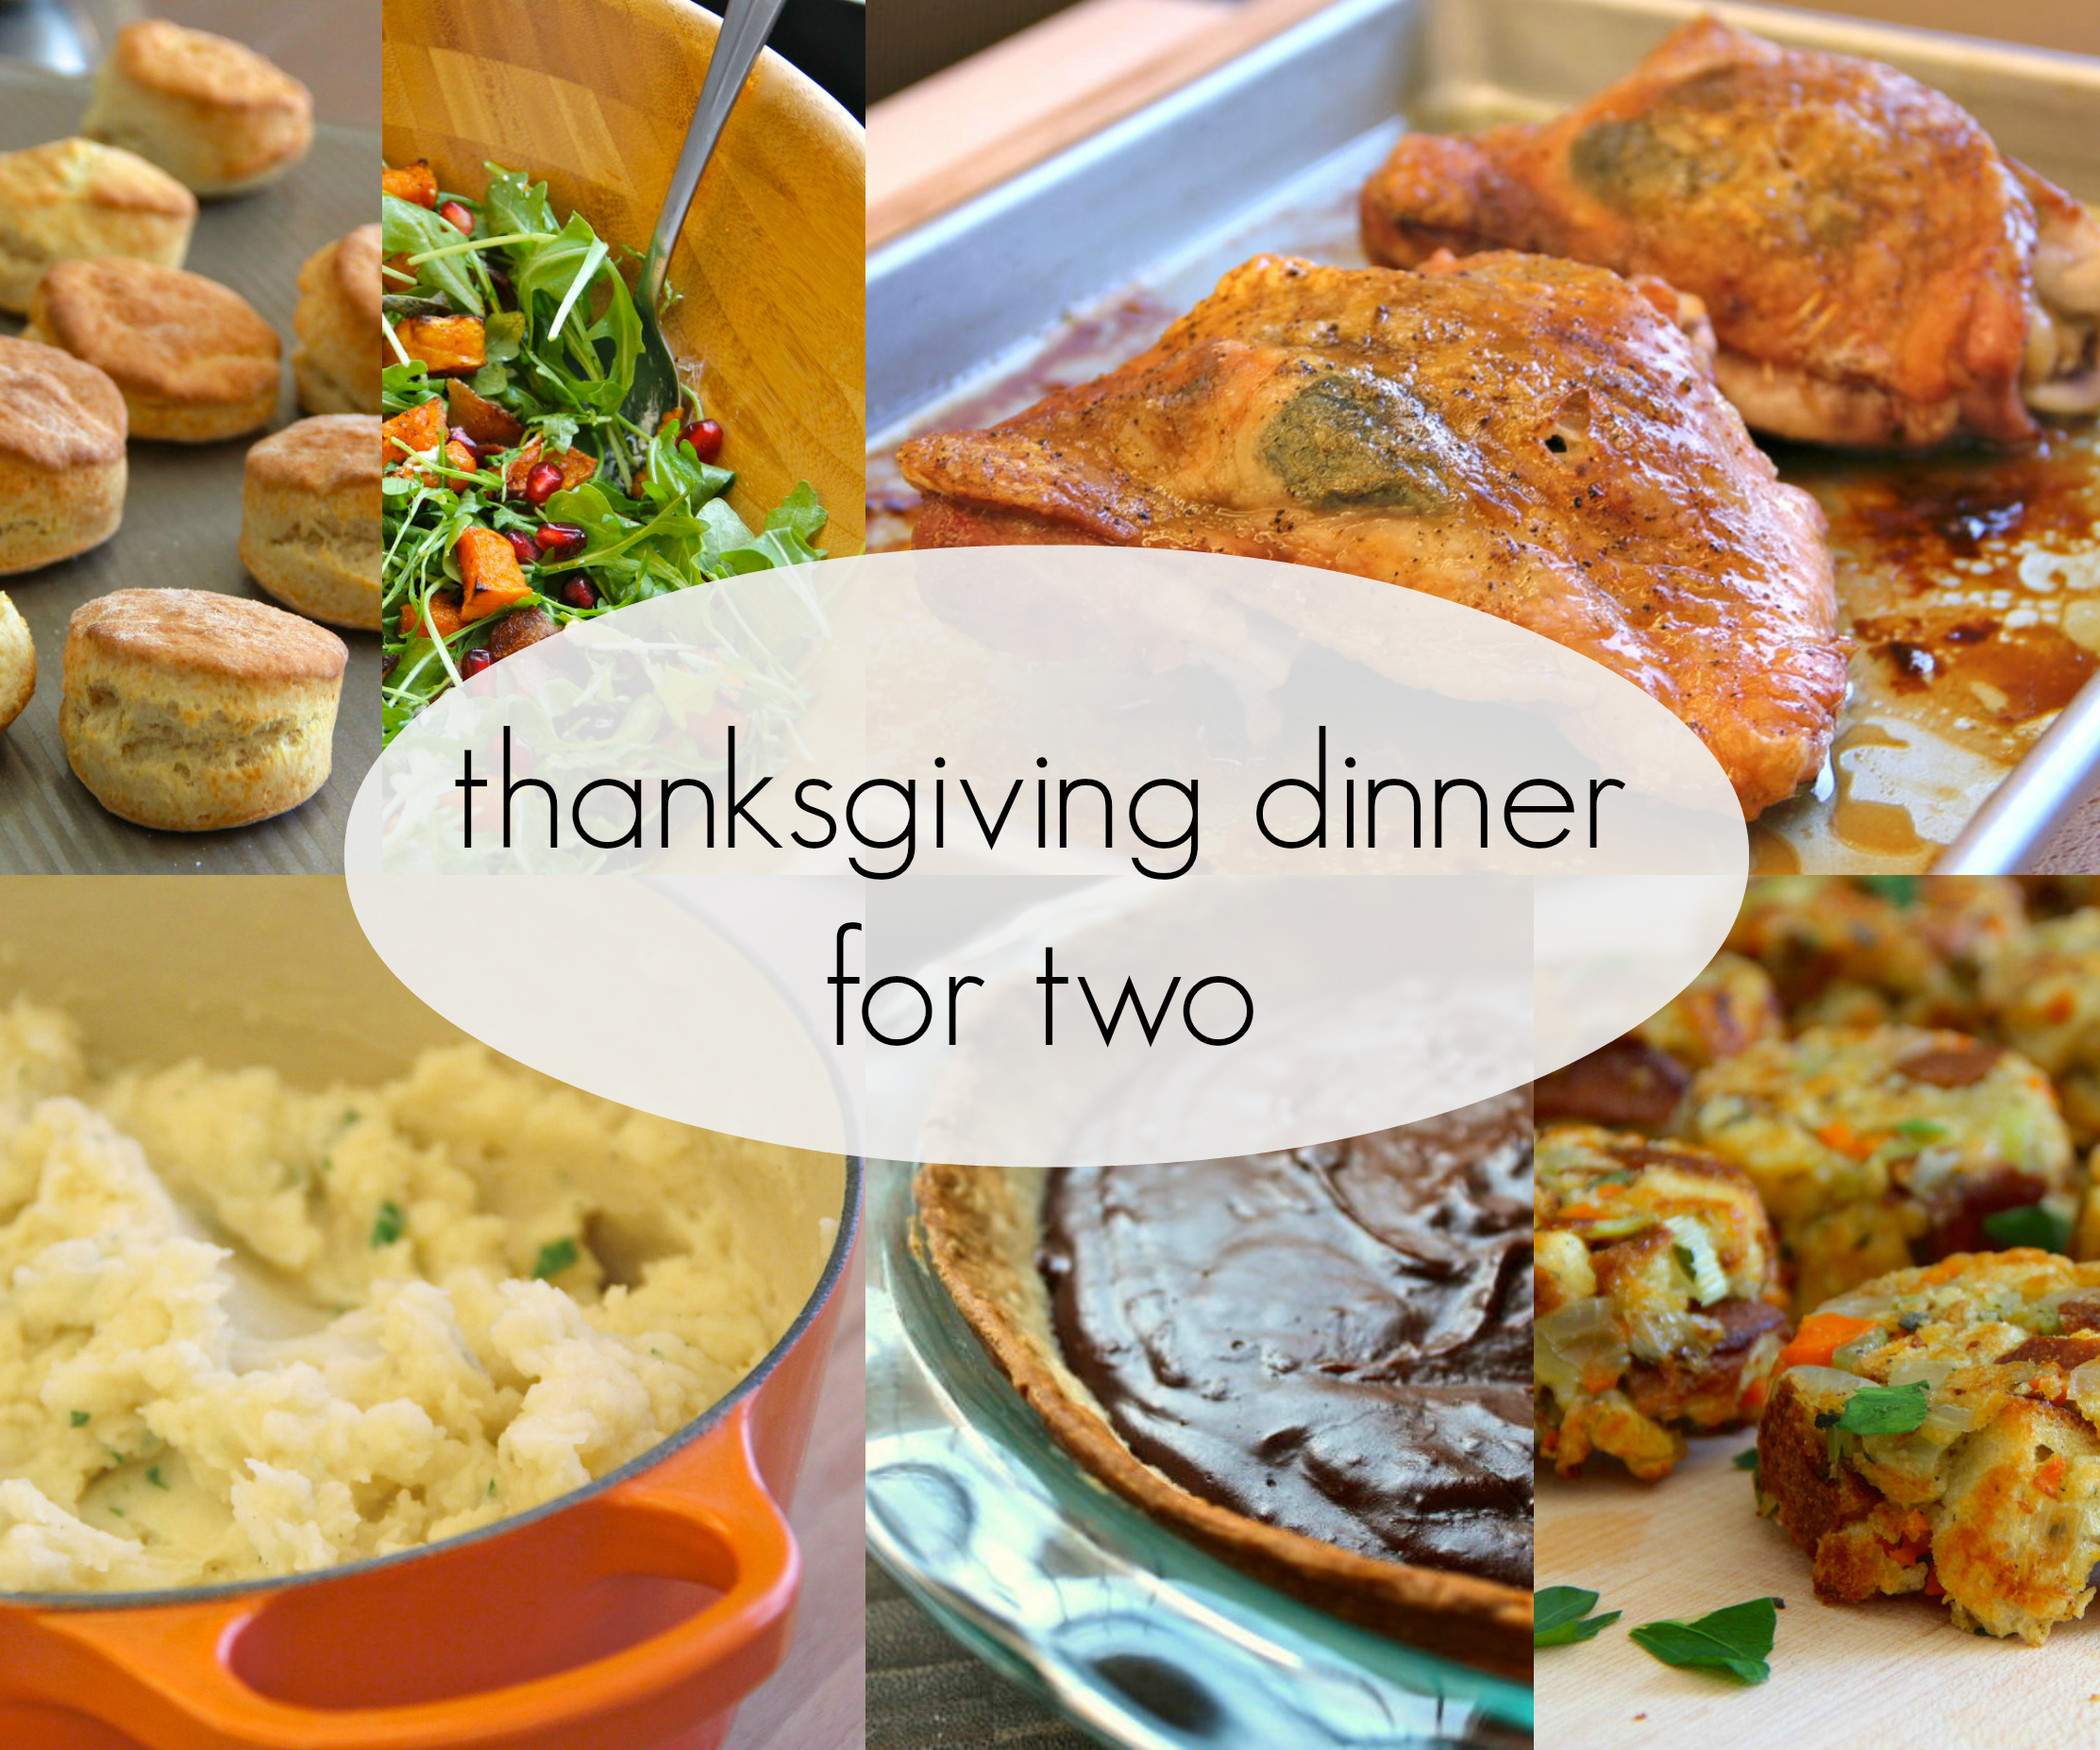 Thanksgiving Dinner For Two
 thanksgiving dinner for two